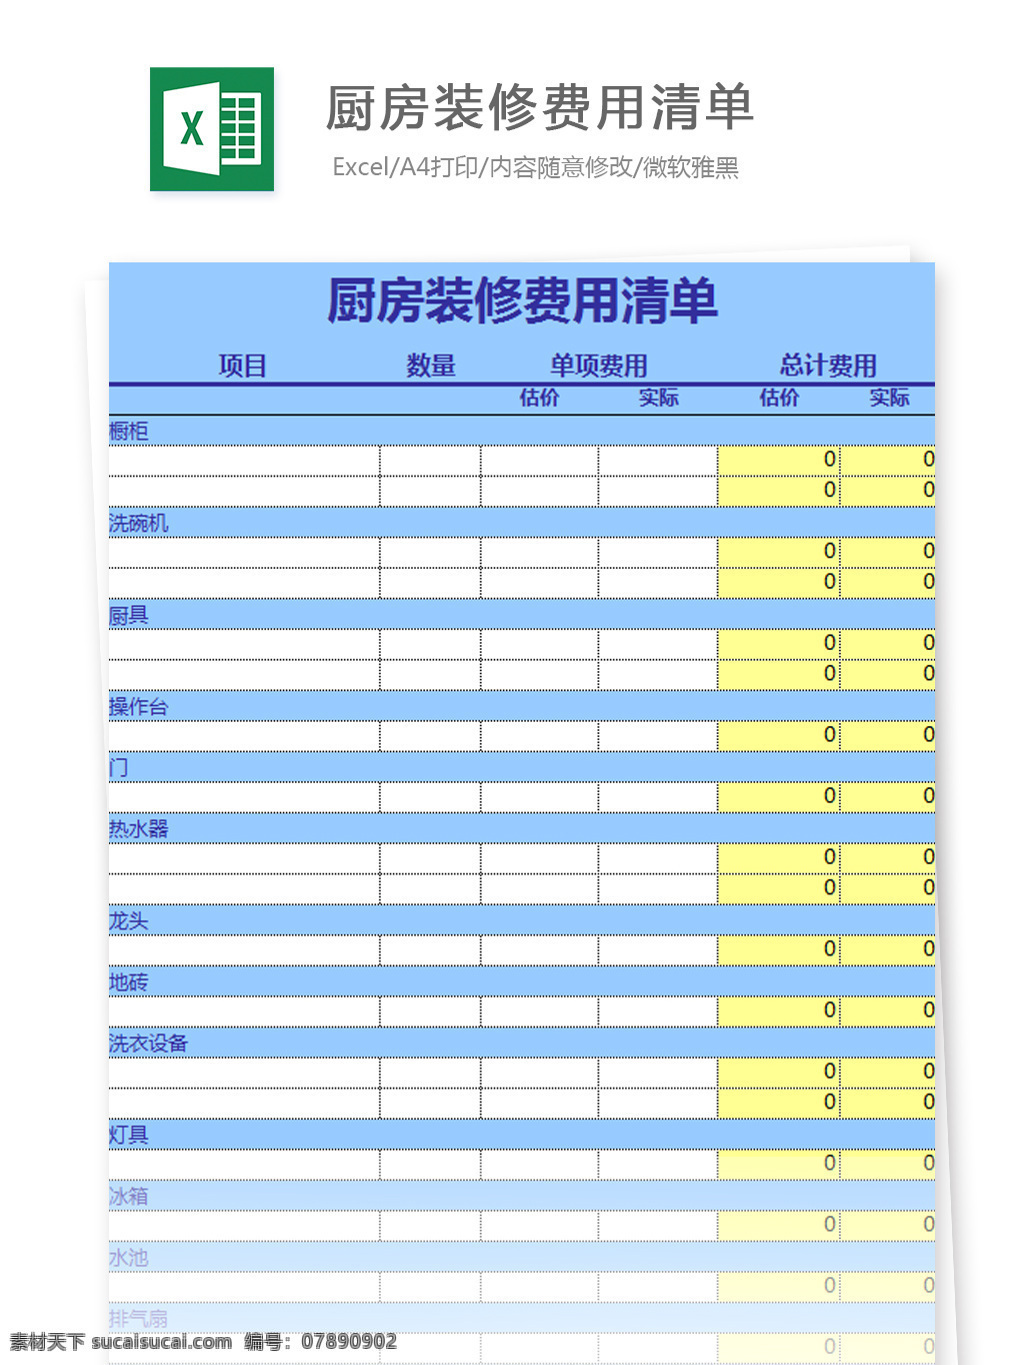 excel 图表 图表模板 模板 文档 表格 表格模板 自动变换 表格设计 厨房 装修 费用 清单